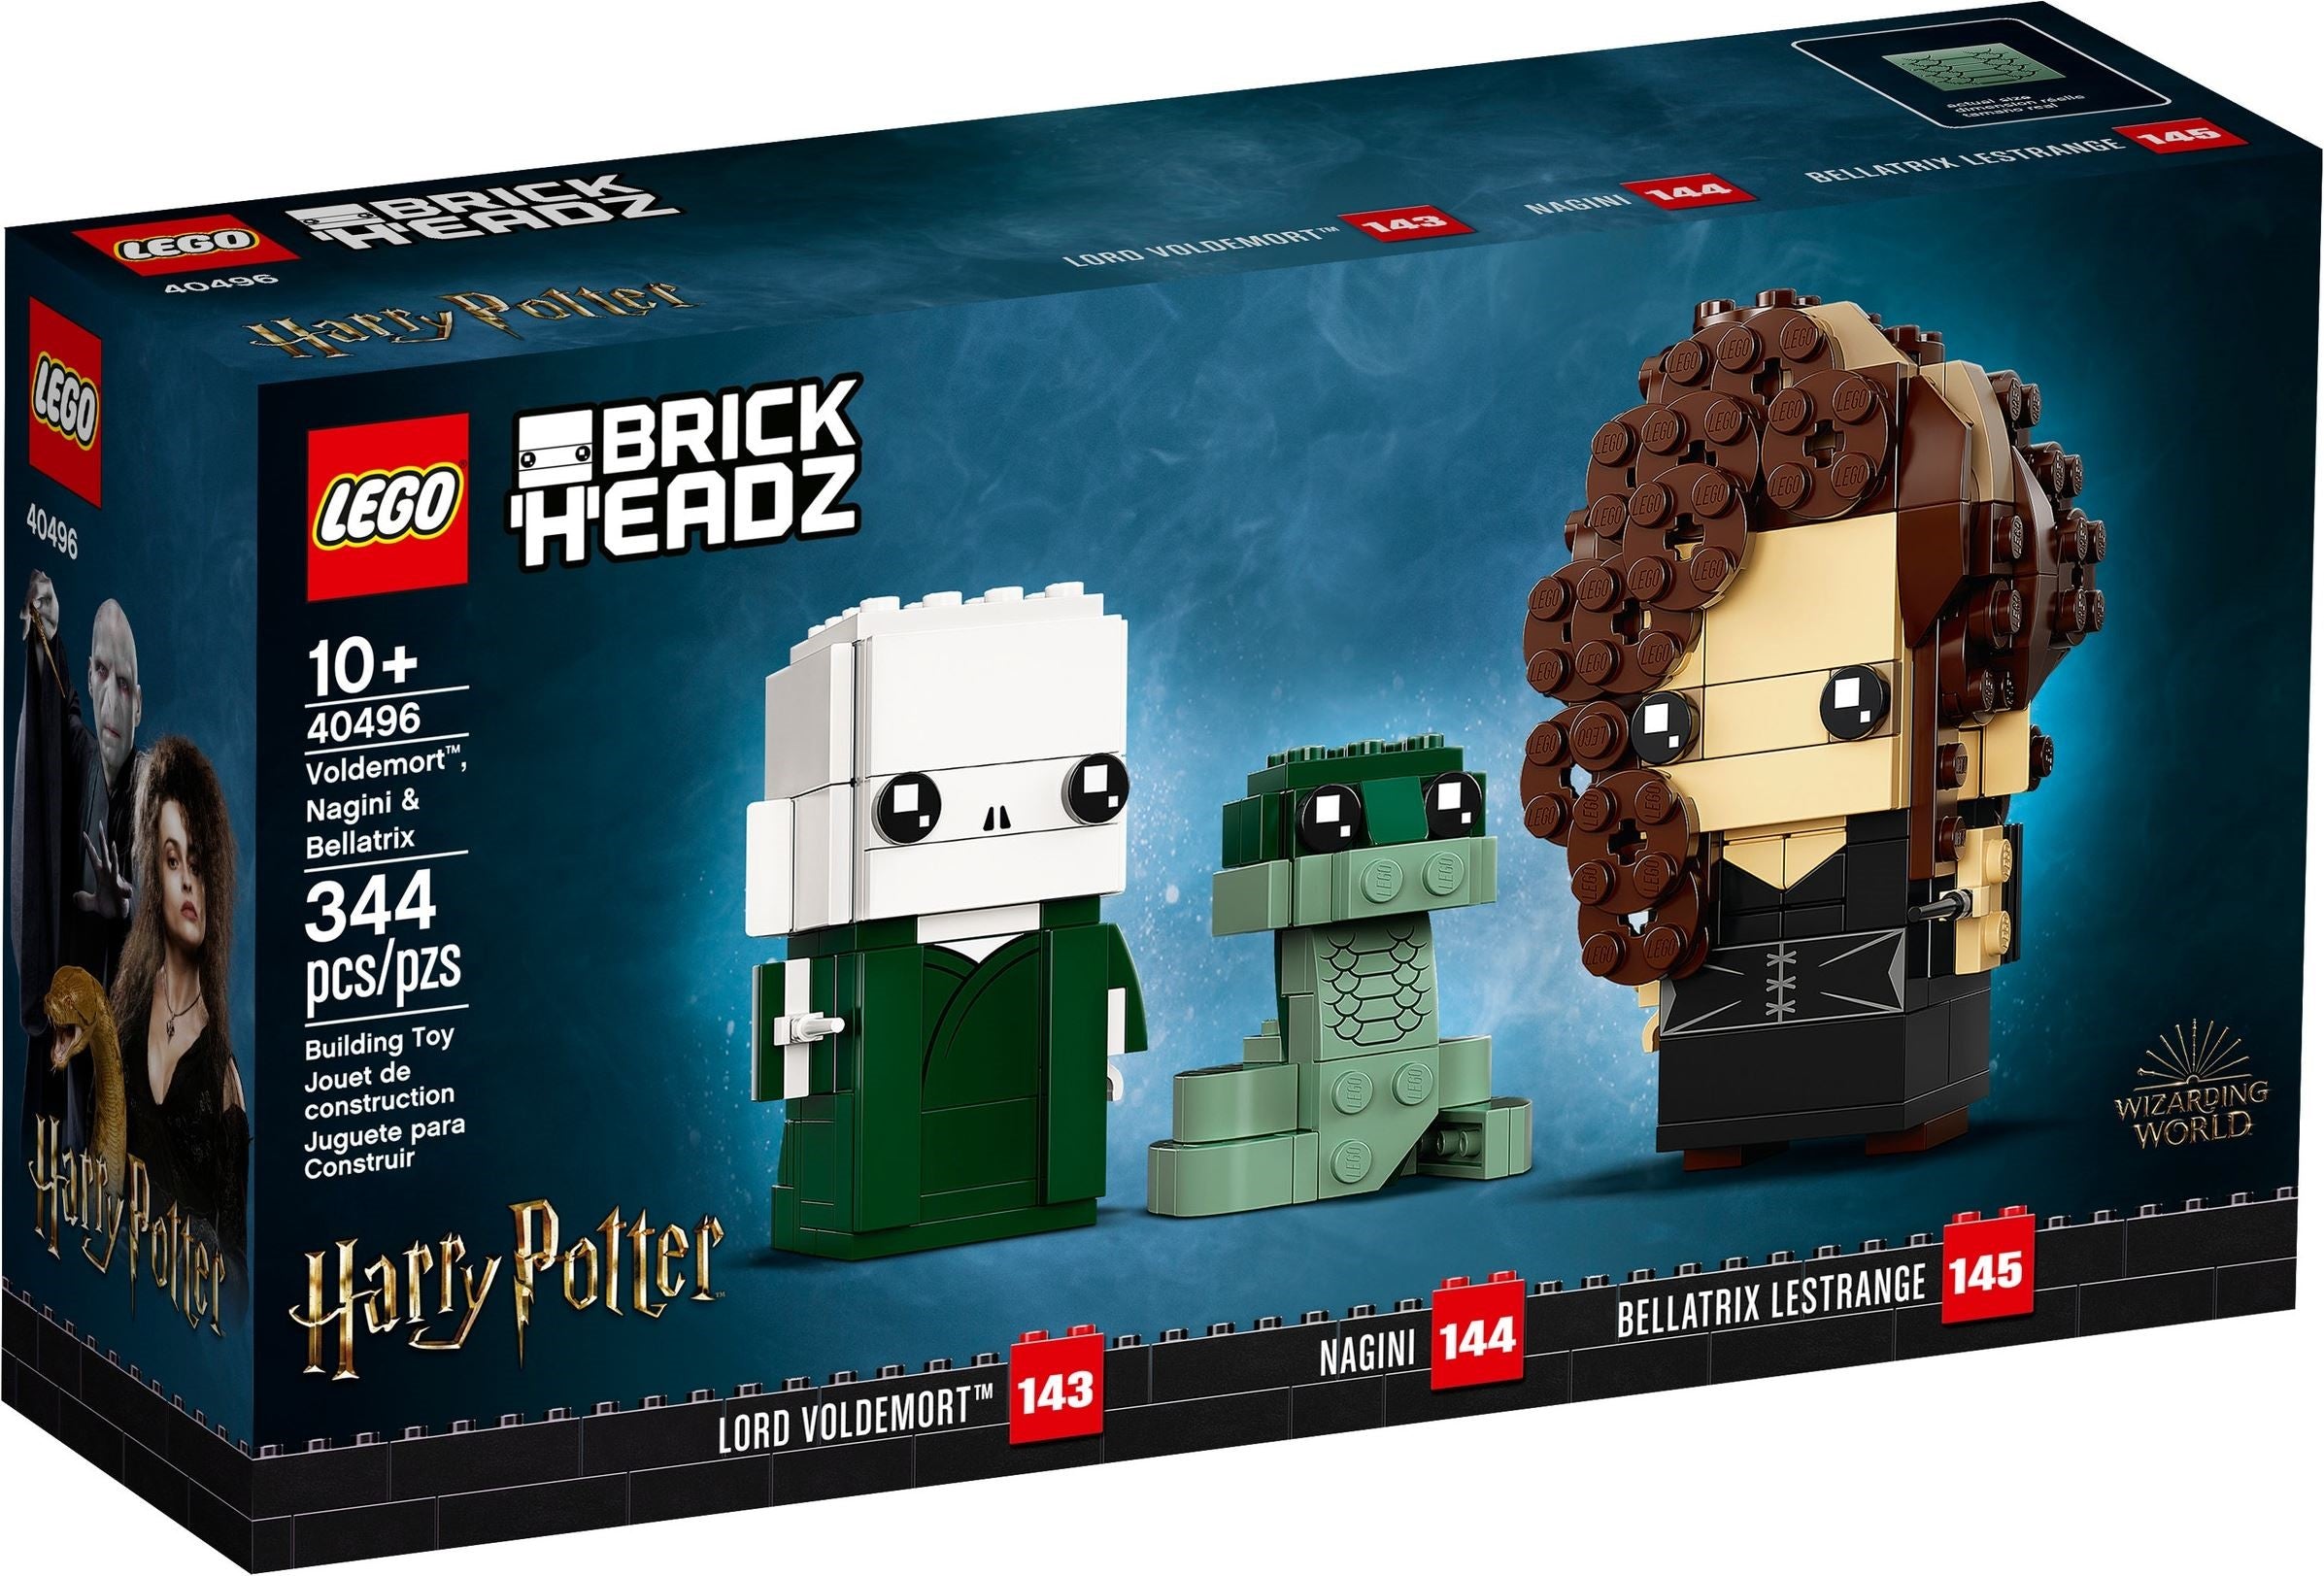 Lego Brickheadz 40496 - Voldemort, Nagini & Bellatrix